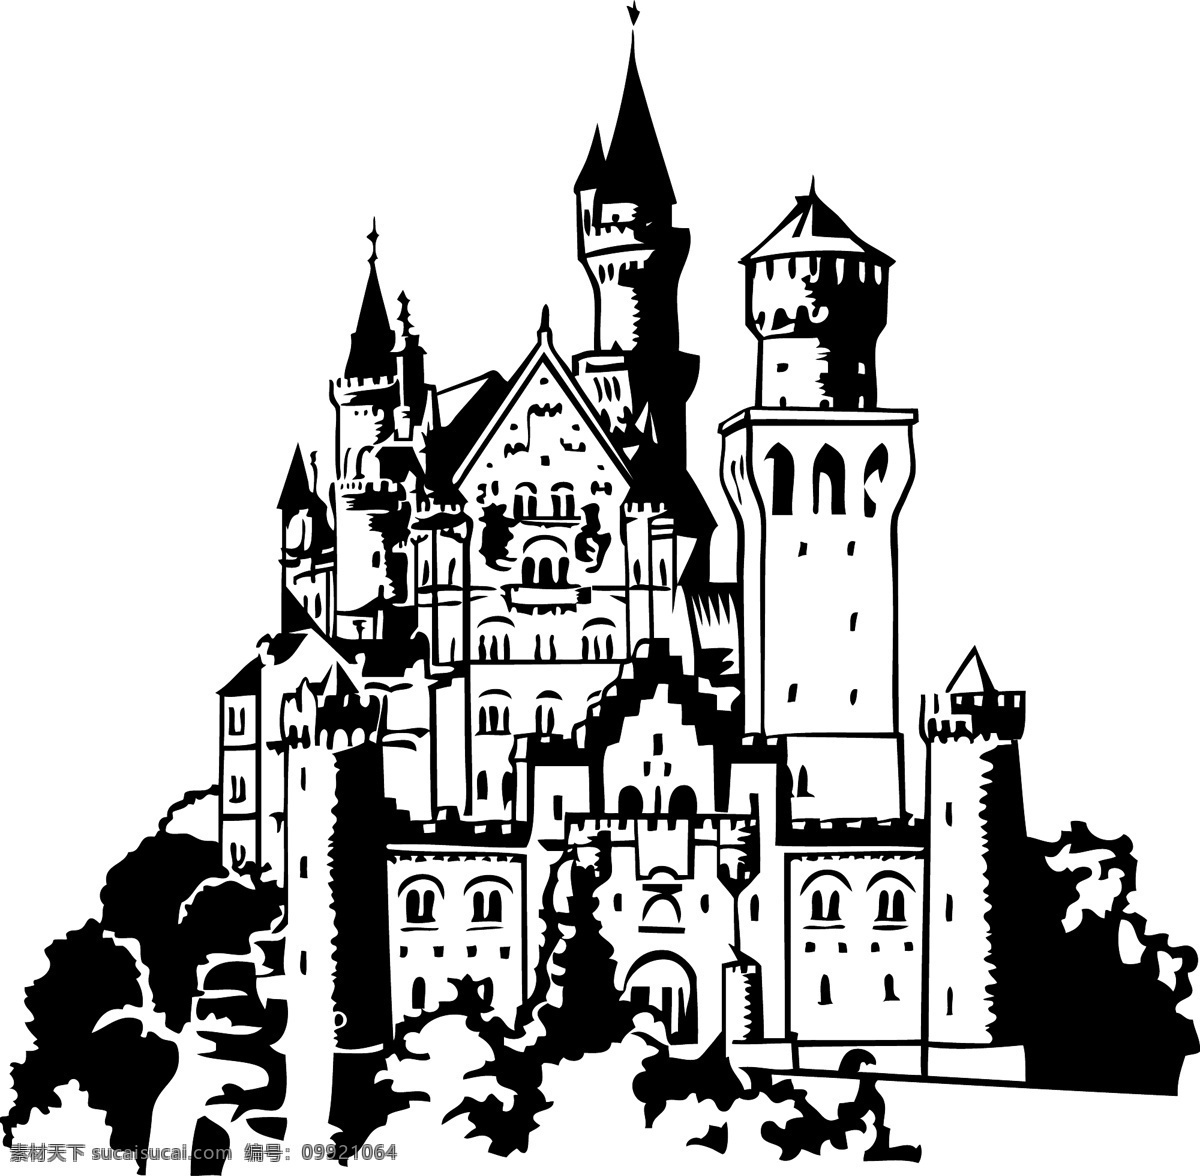 欧式 城堡 传统建筑 建筑家居 酒庄 欧式城堡 庄园 矢量 模板下载 家居装饰素材